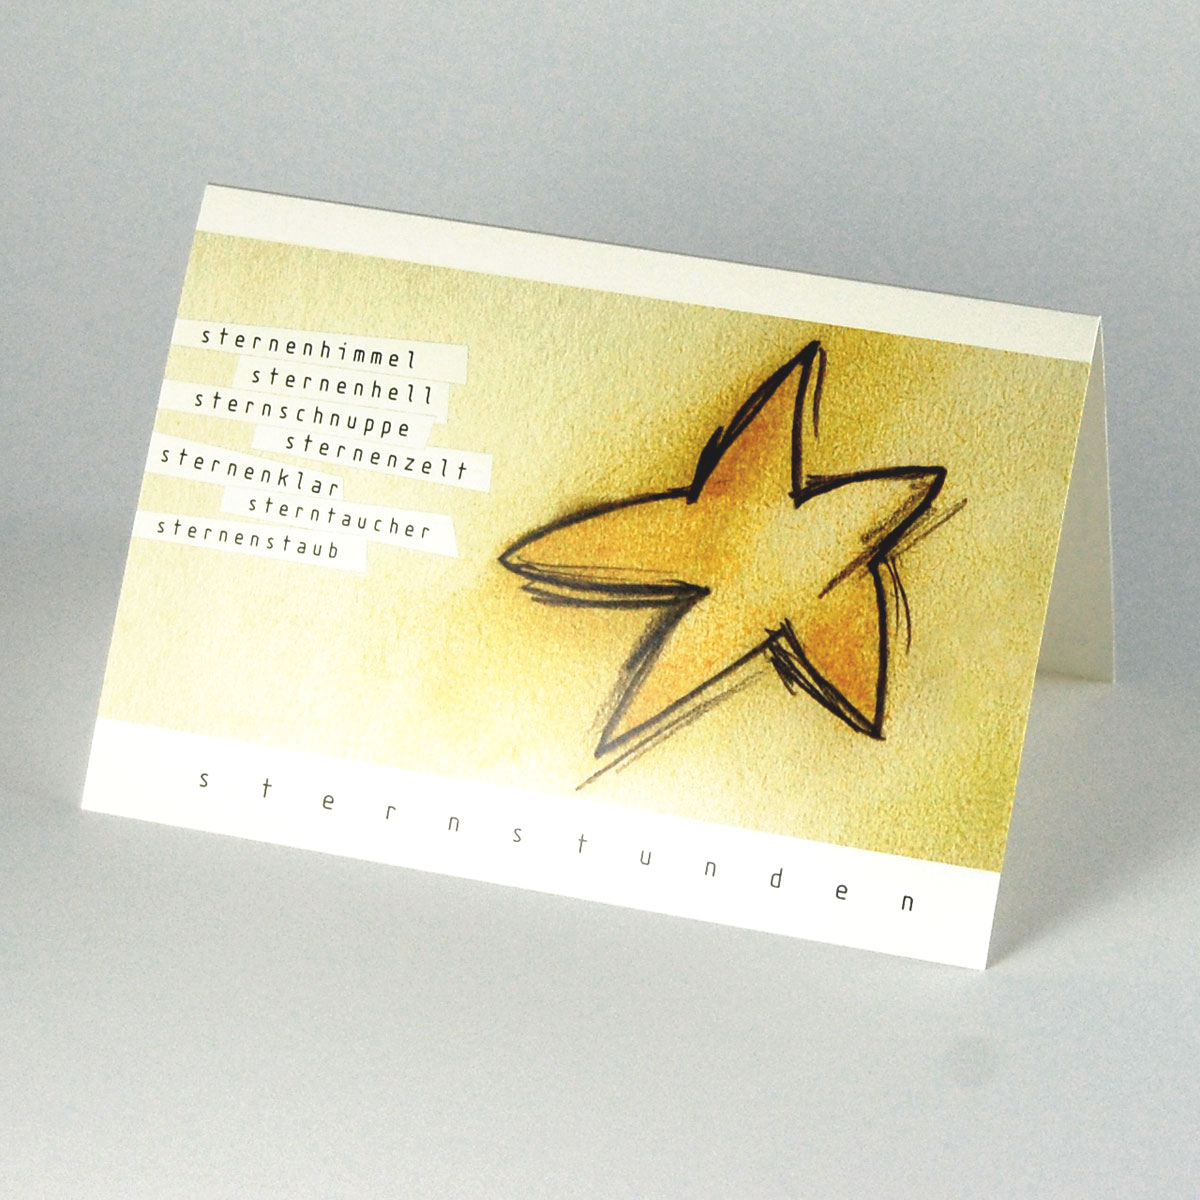 grafische Weihnachtskarten: sternenhimmel sternenhell sternschnuppe sternenzelt sternenklar sterntaucher sternenstaub